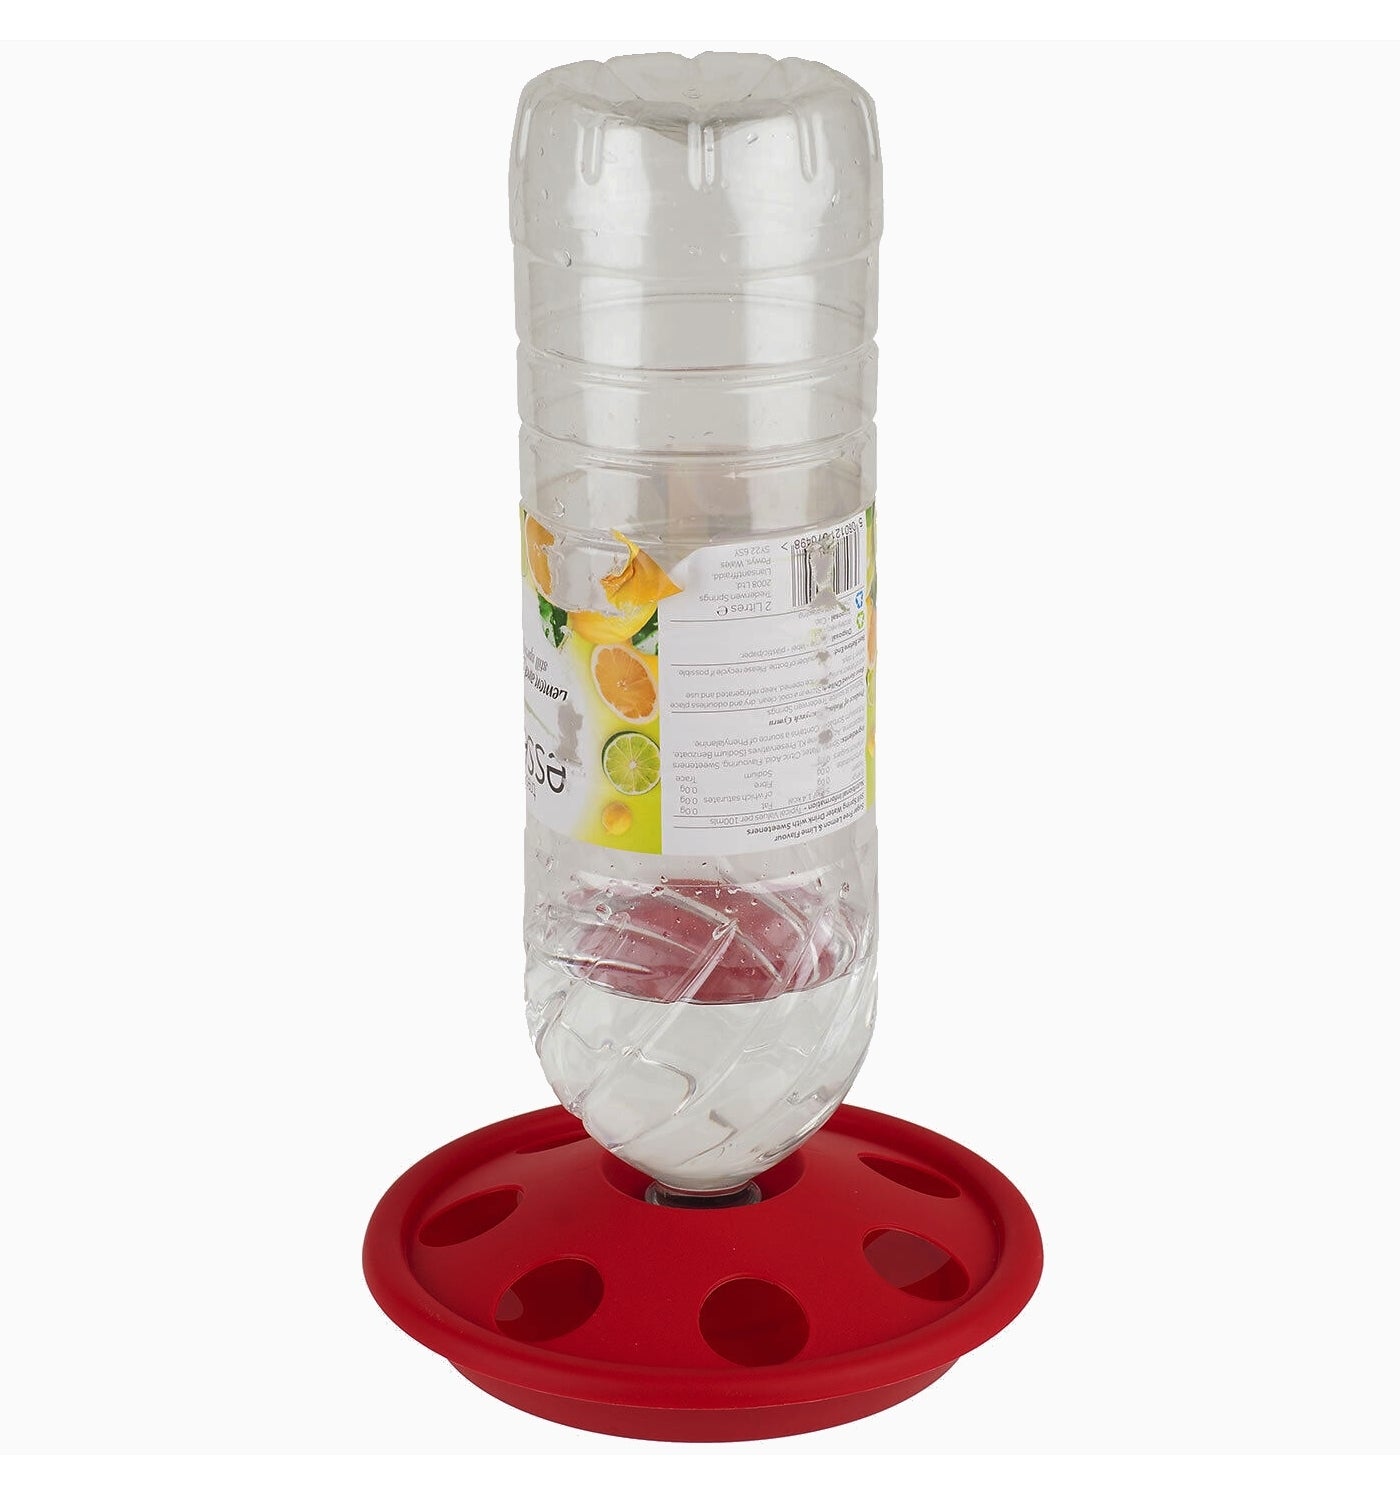 7 Hole Plastic Bottle Drinker for Poultry Chicks & Quail - Buy Online SPR Centre UK